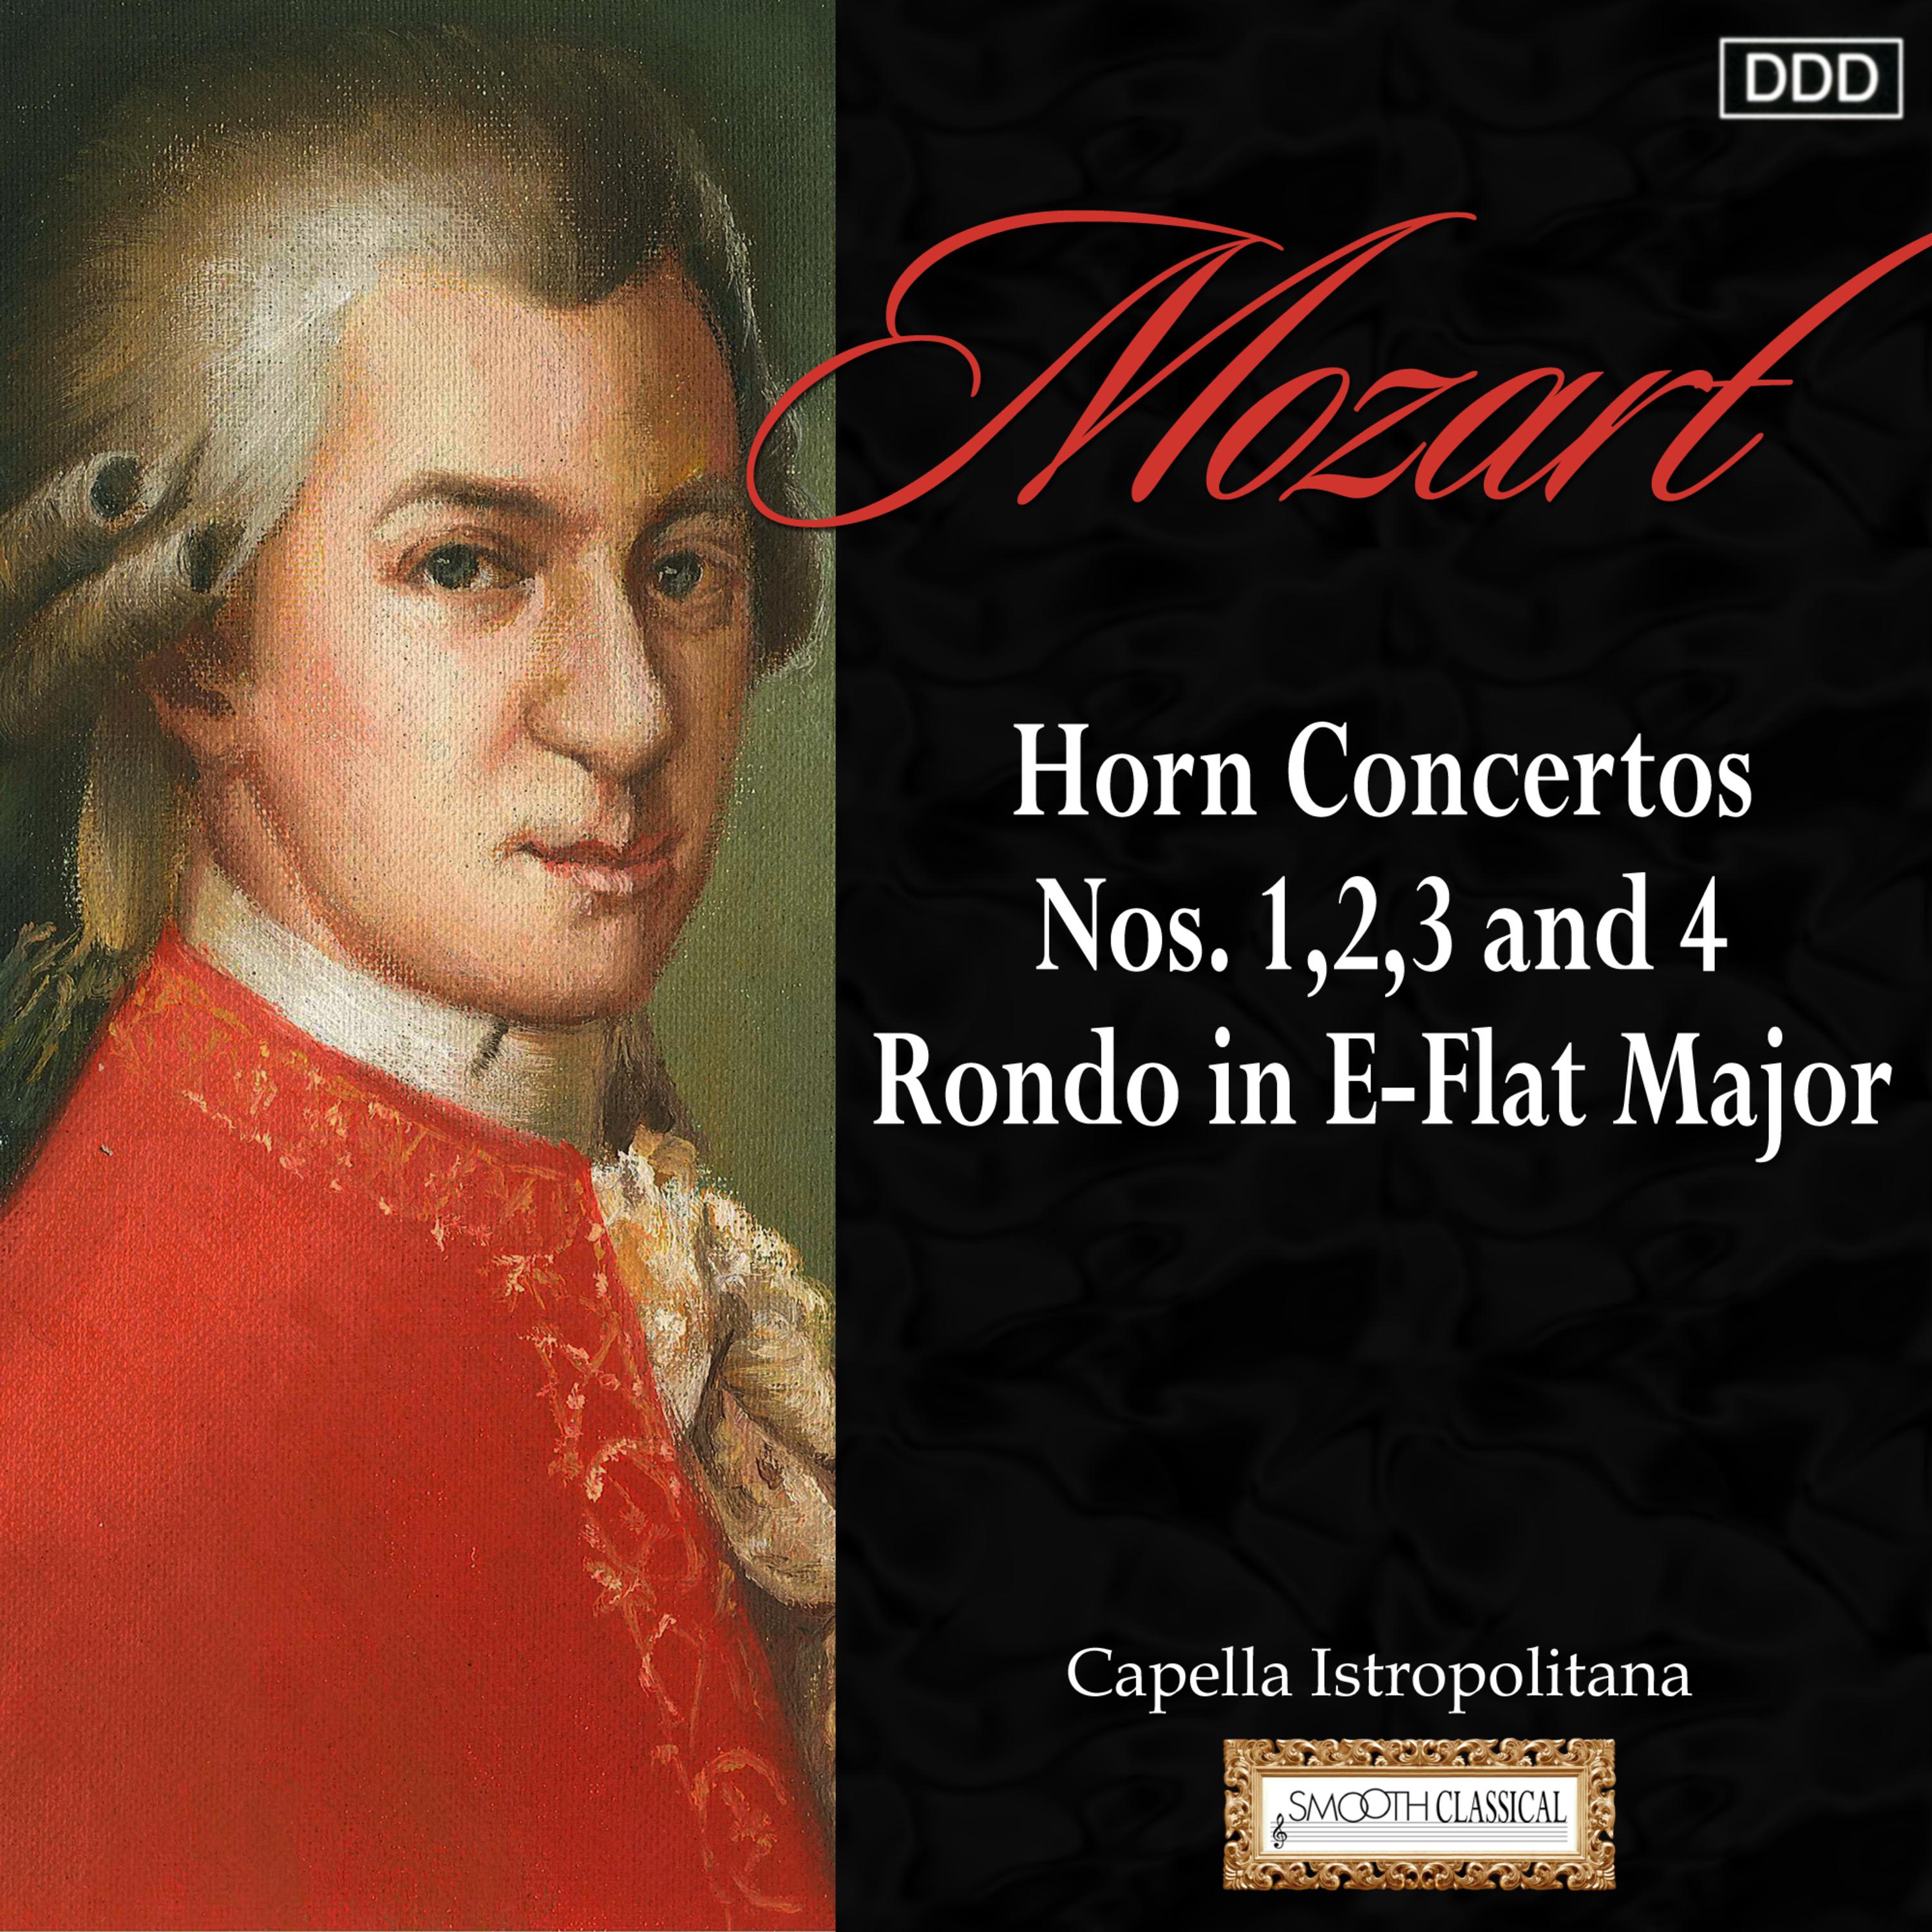 Horn Concerto No. 4 in E-Flat Major, K. 495: II. Romance: Andante cantabile